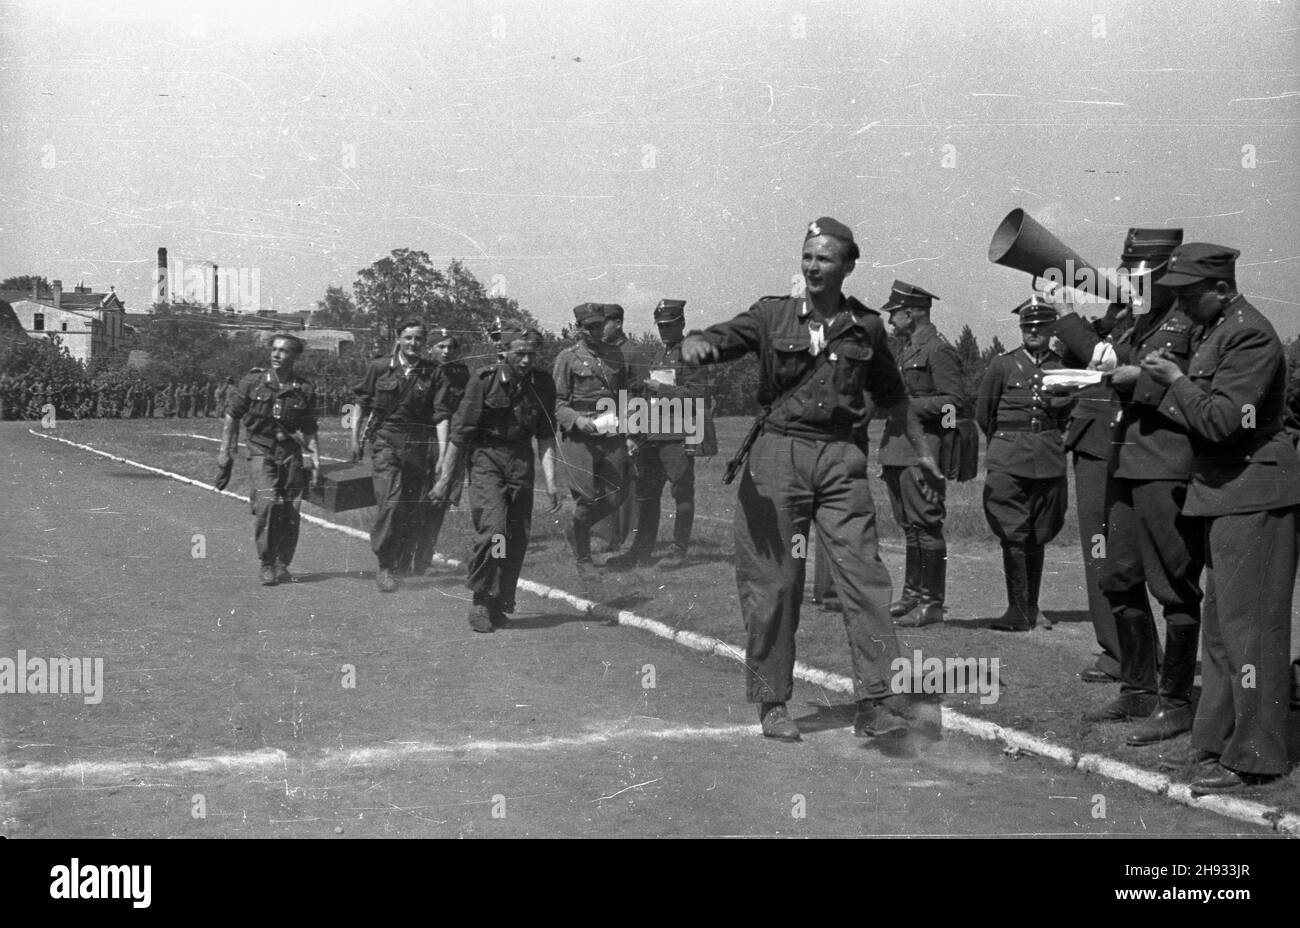 Gniezno, 1947-05-27. Pierwszy ogólnopolski zlot junaków Przysposobienia Rolniczo-Wojskowego (PRW) w GnieŸnie. Nz.  uczestnicy marszu patrolowego na 5 kilometrów finiszuj¹ na stadionie Zwi¹zku M³odzie¿y Wiejskiej Wici.   ps/ms  PAP      Gniezno, May 27, 1947. The first young farmers' national congress in Gniezno. Pictured: the end of a five-kilometre street march.    ps/ms  PAP Stock Photo